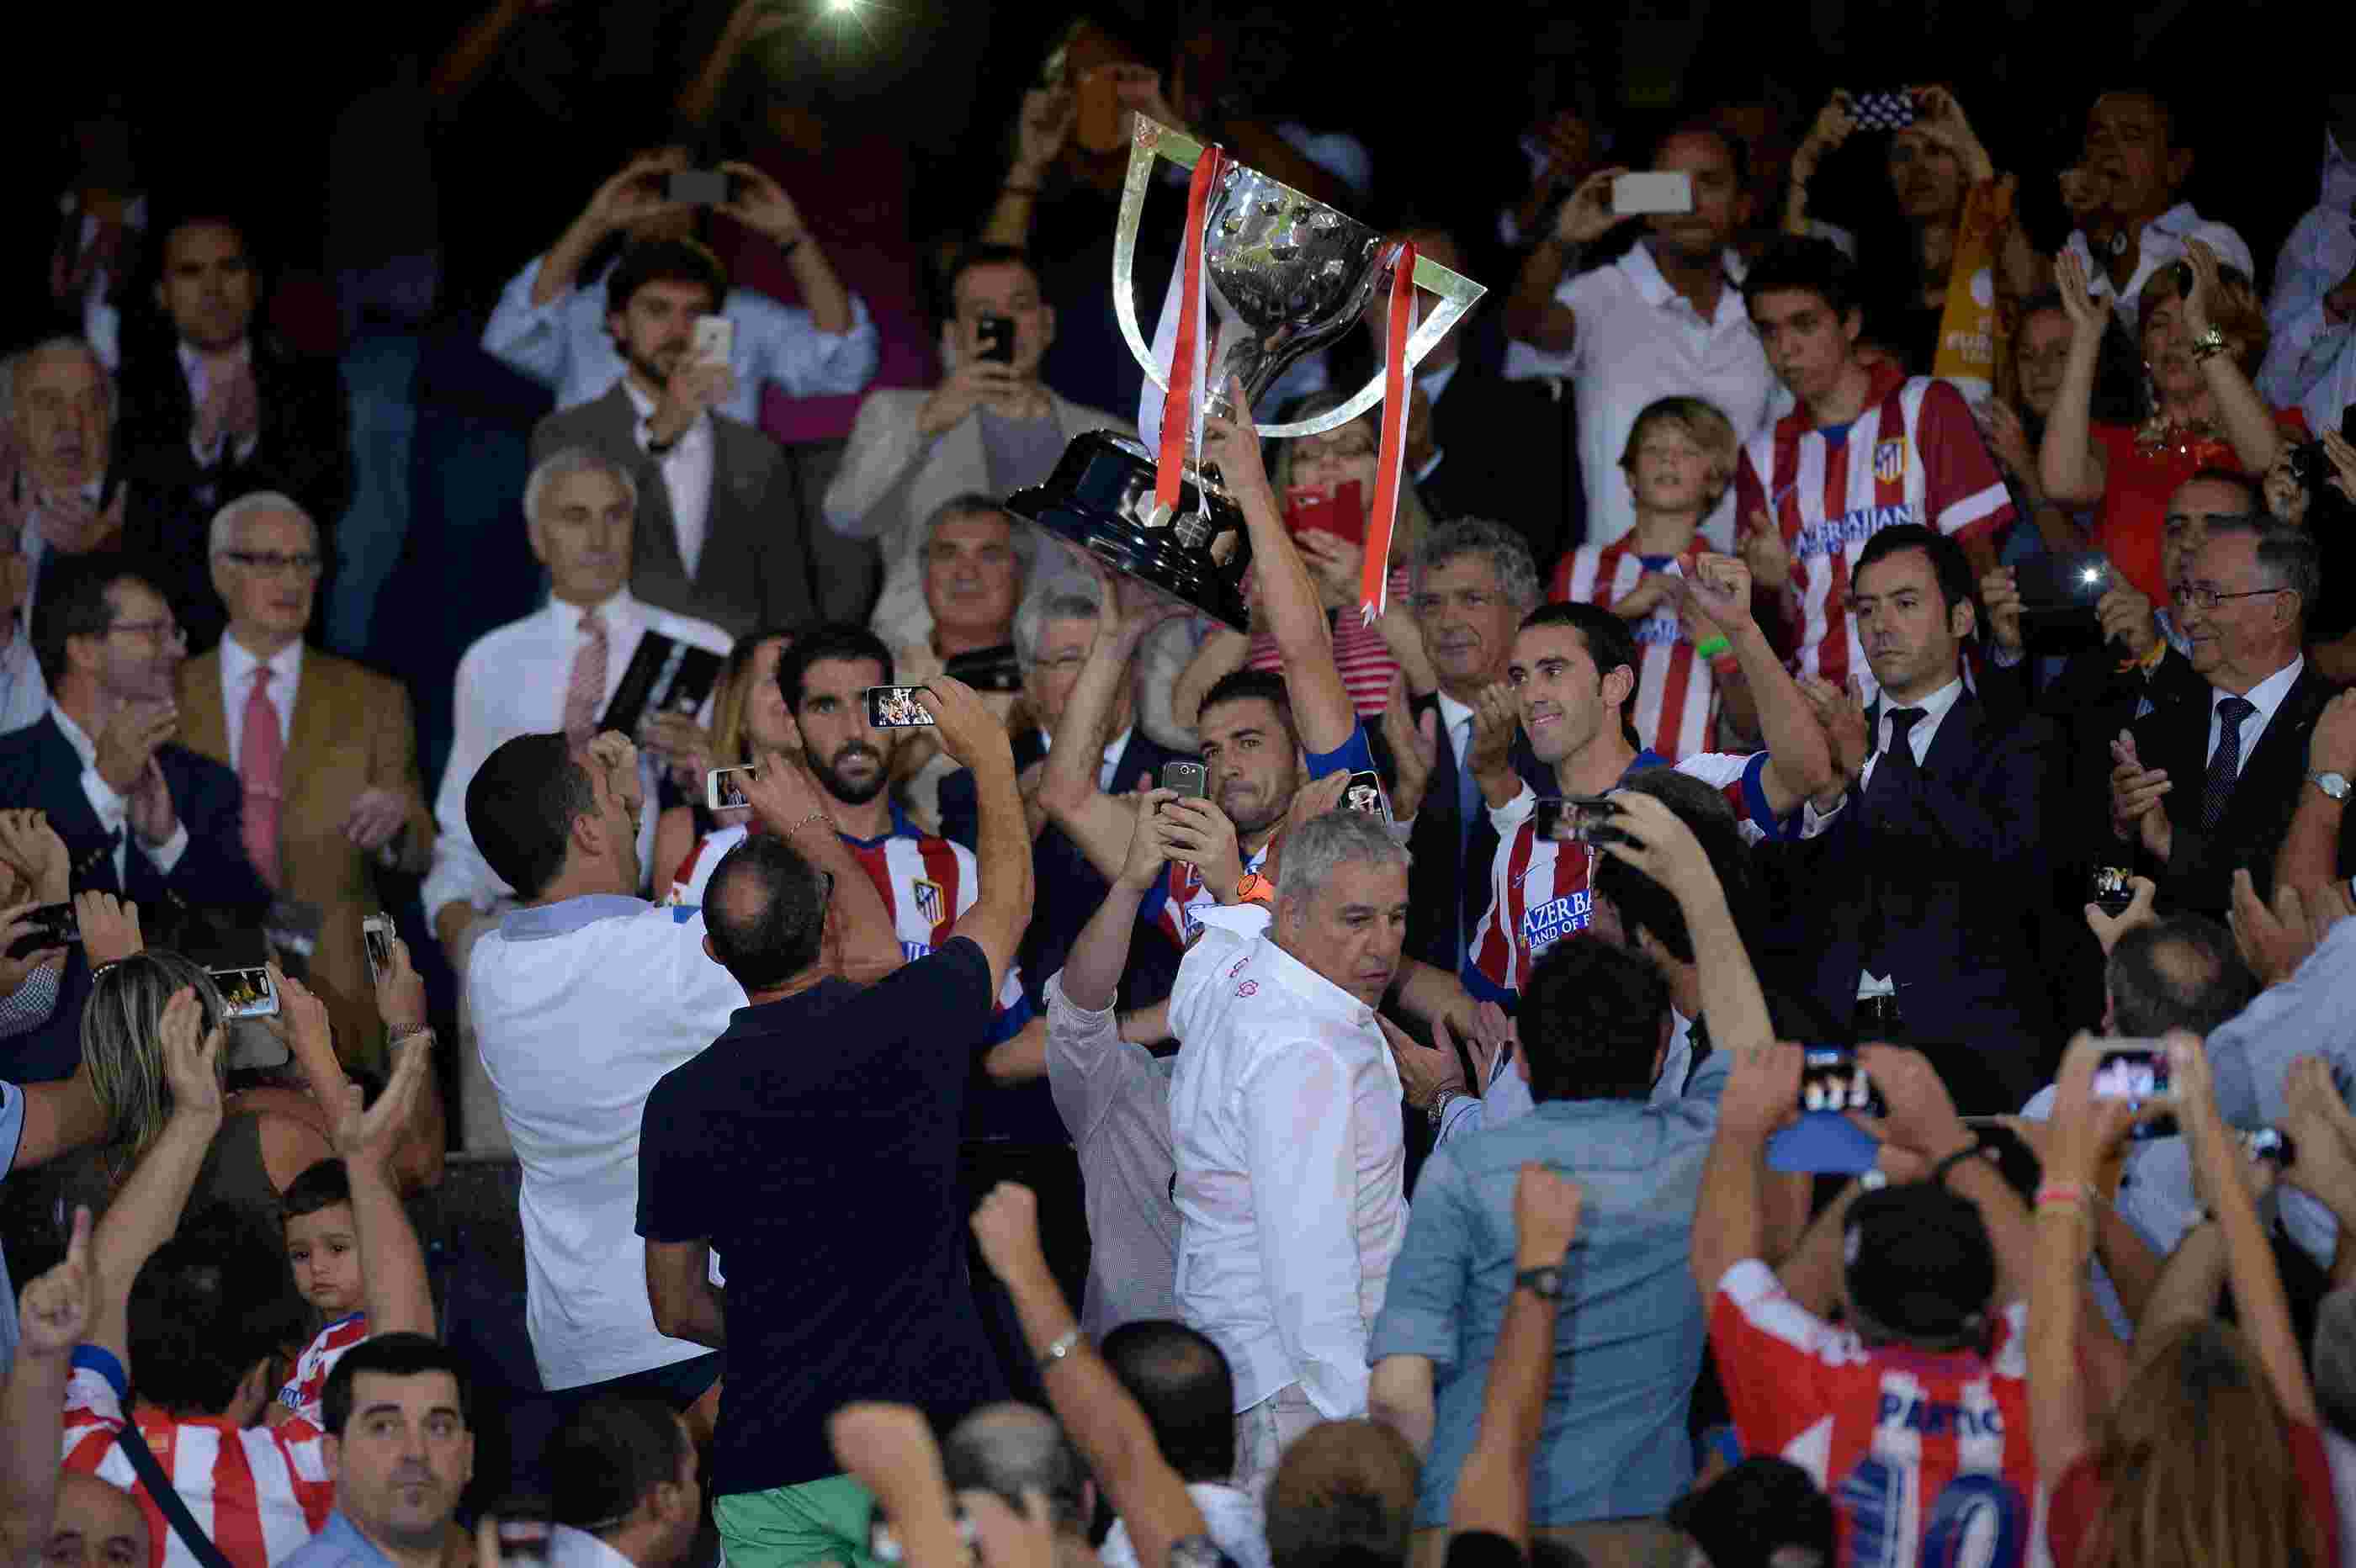 Em terceiro lugar, o Atlético de Madrid já levantou a taça em dez oportunidades, sendo duas delas com Diego Simeone: uma como jogador (1995/1996) e outra como treinador (2013/2014).